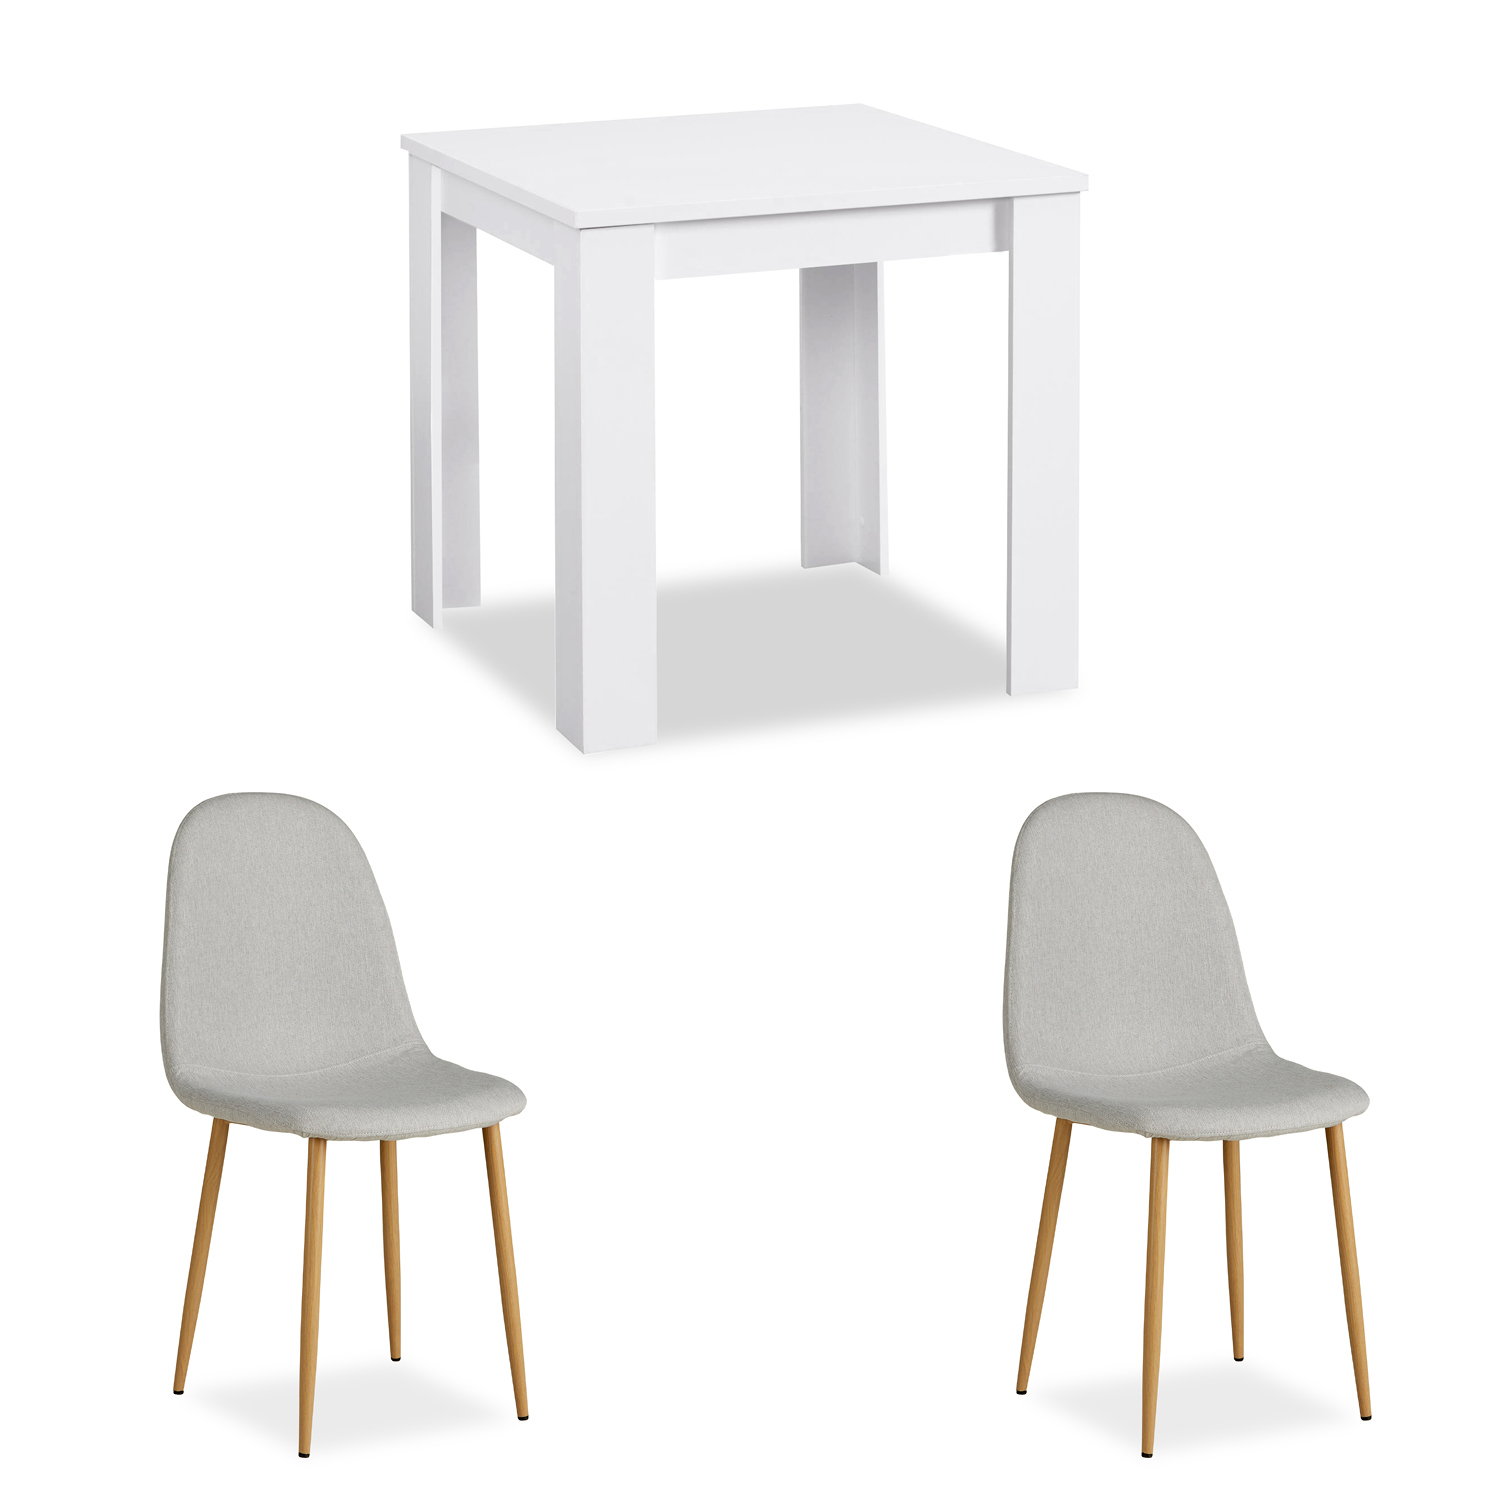 Essgruppe mit 2 Stühlen Esstisch Weiß 80x80 cm Esszimmertisch Holz Massiv Polsterstühle Grau